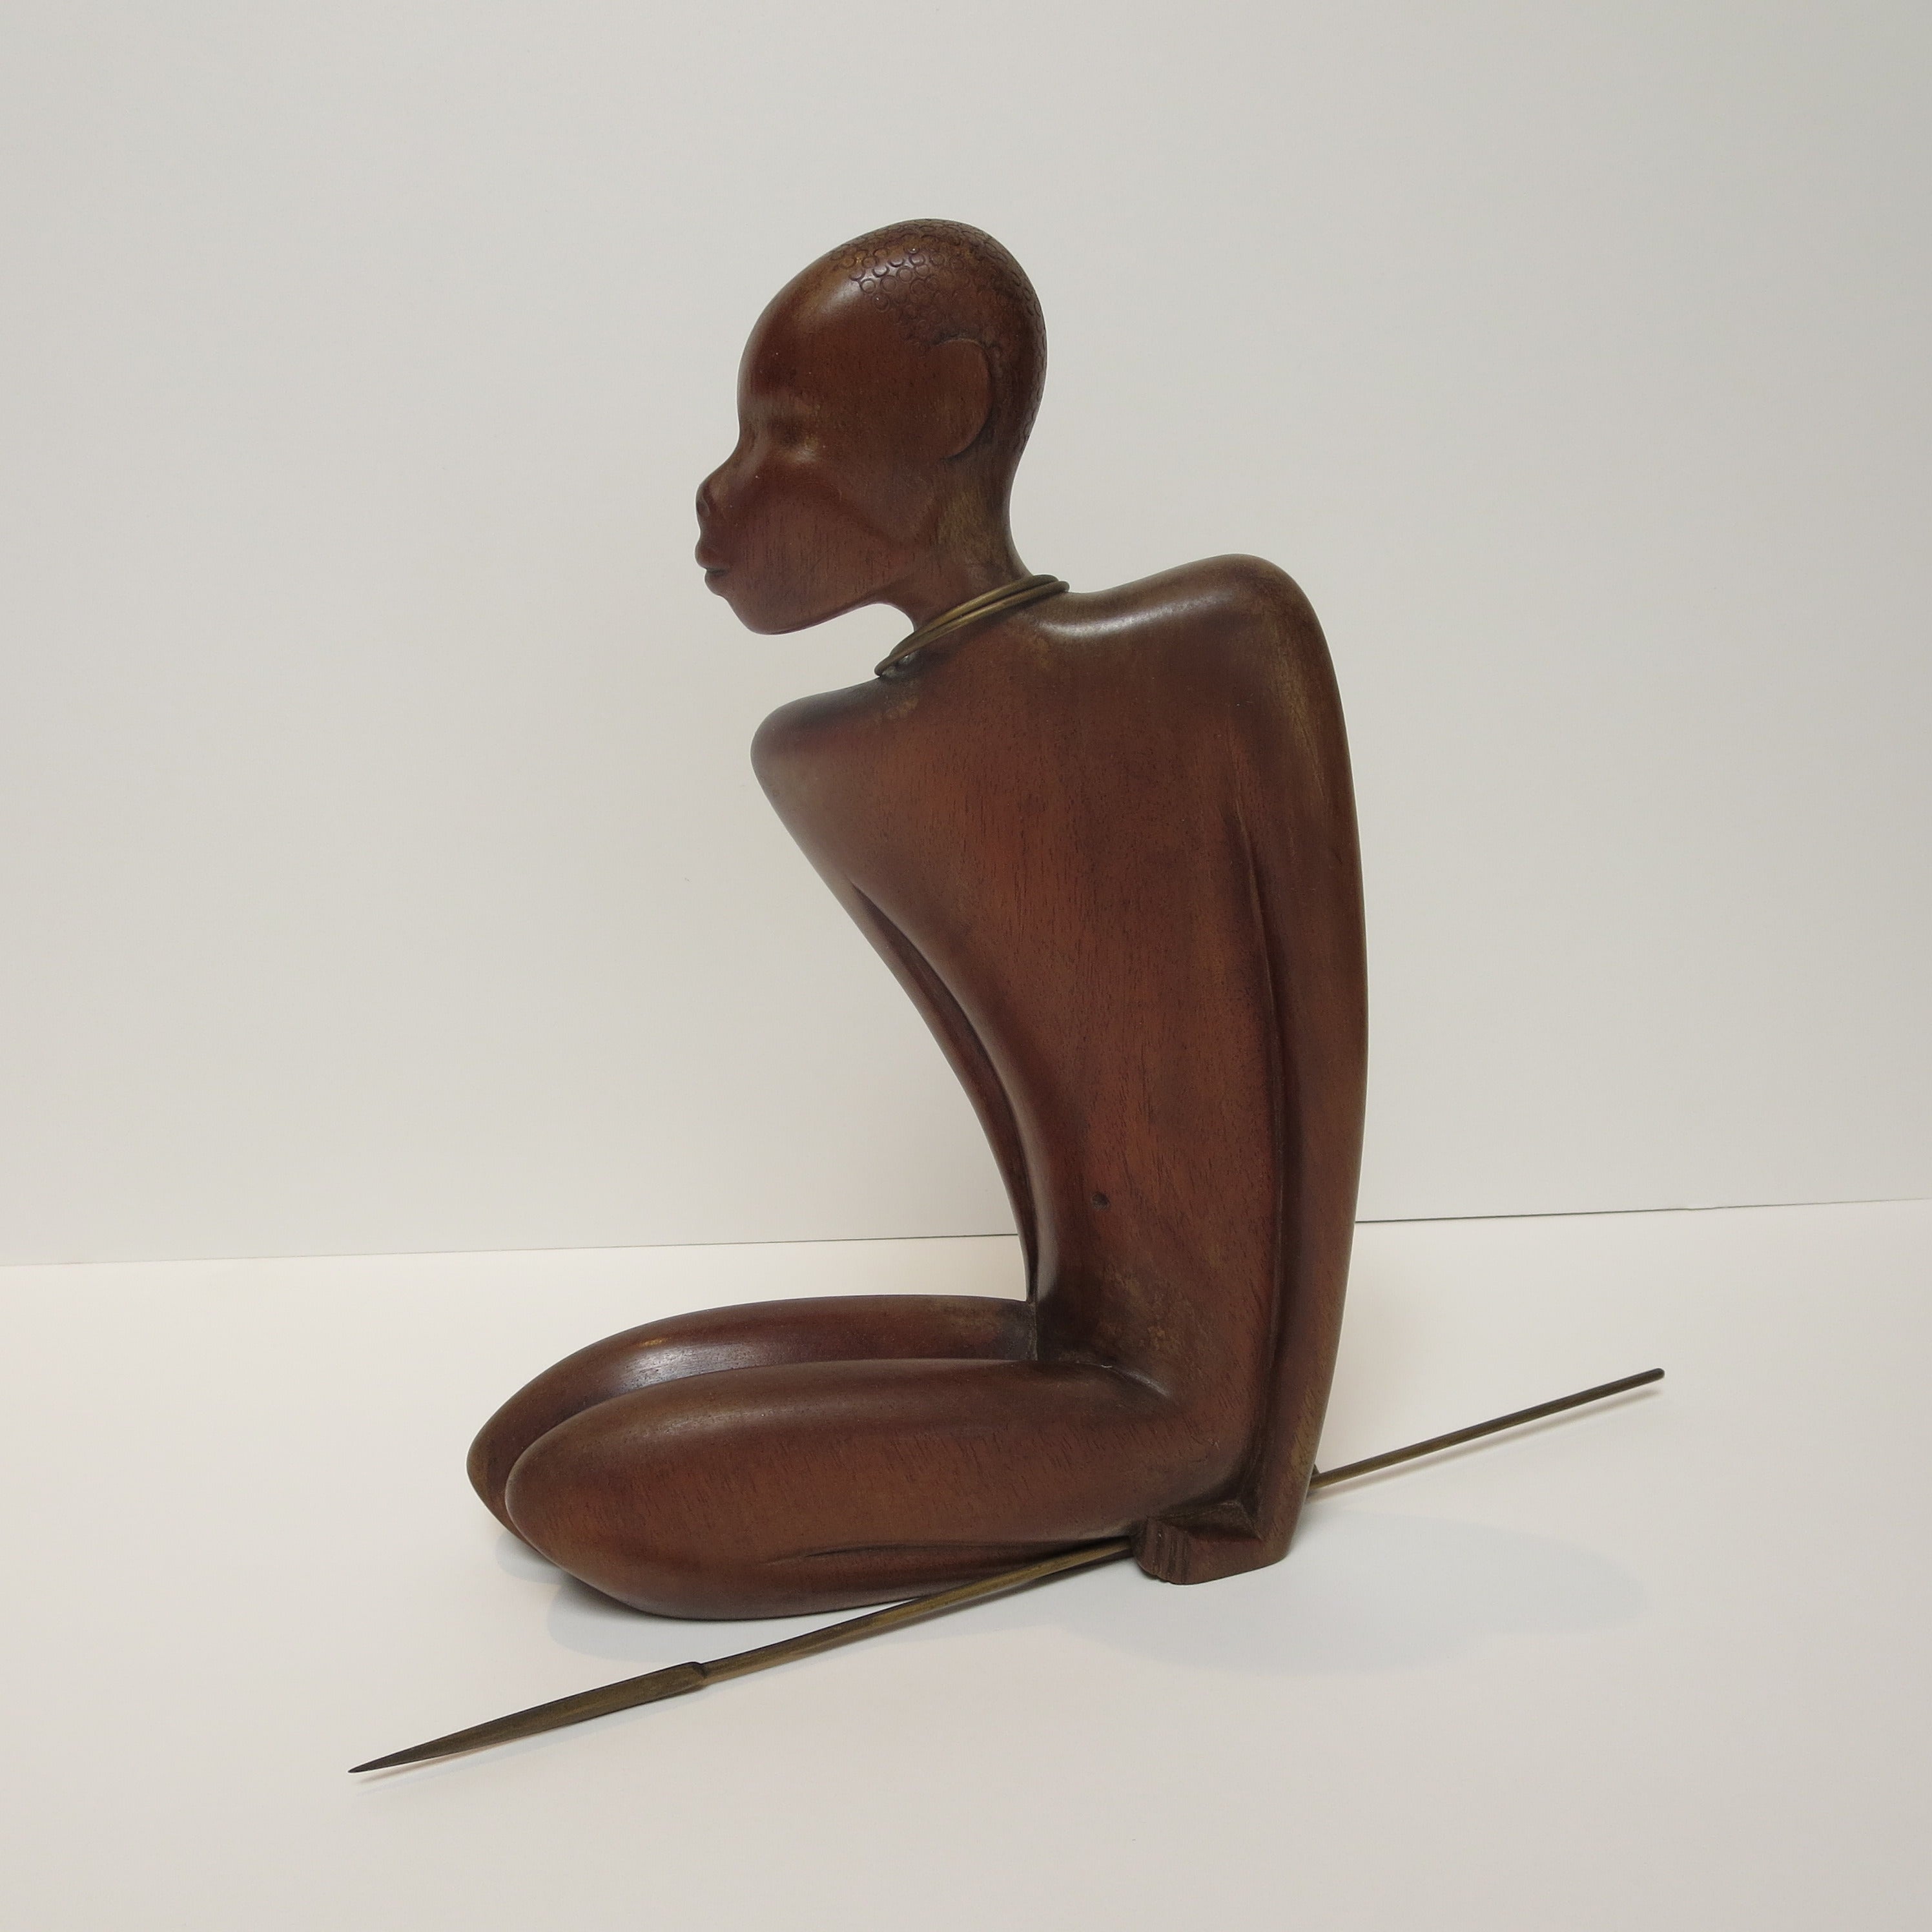 Bronze and Wood Warrior Sculpture by Karl Hagenauer